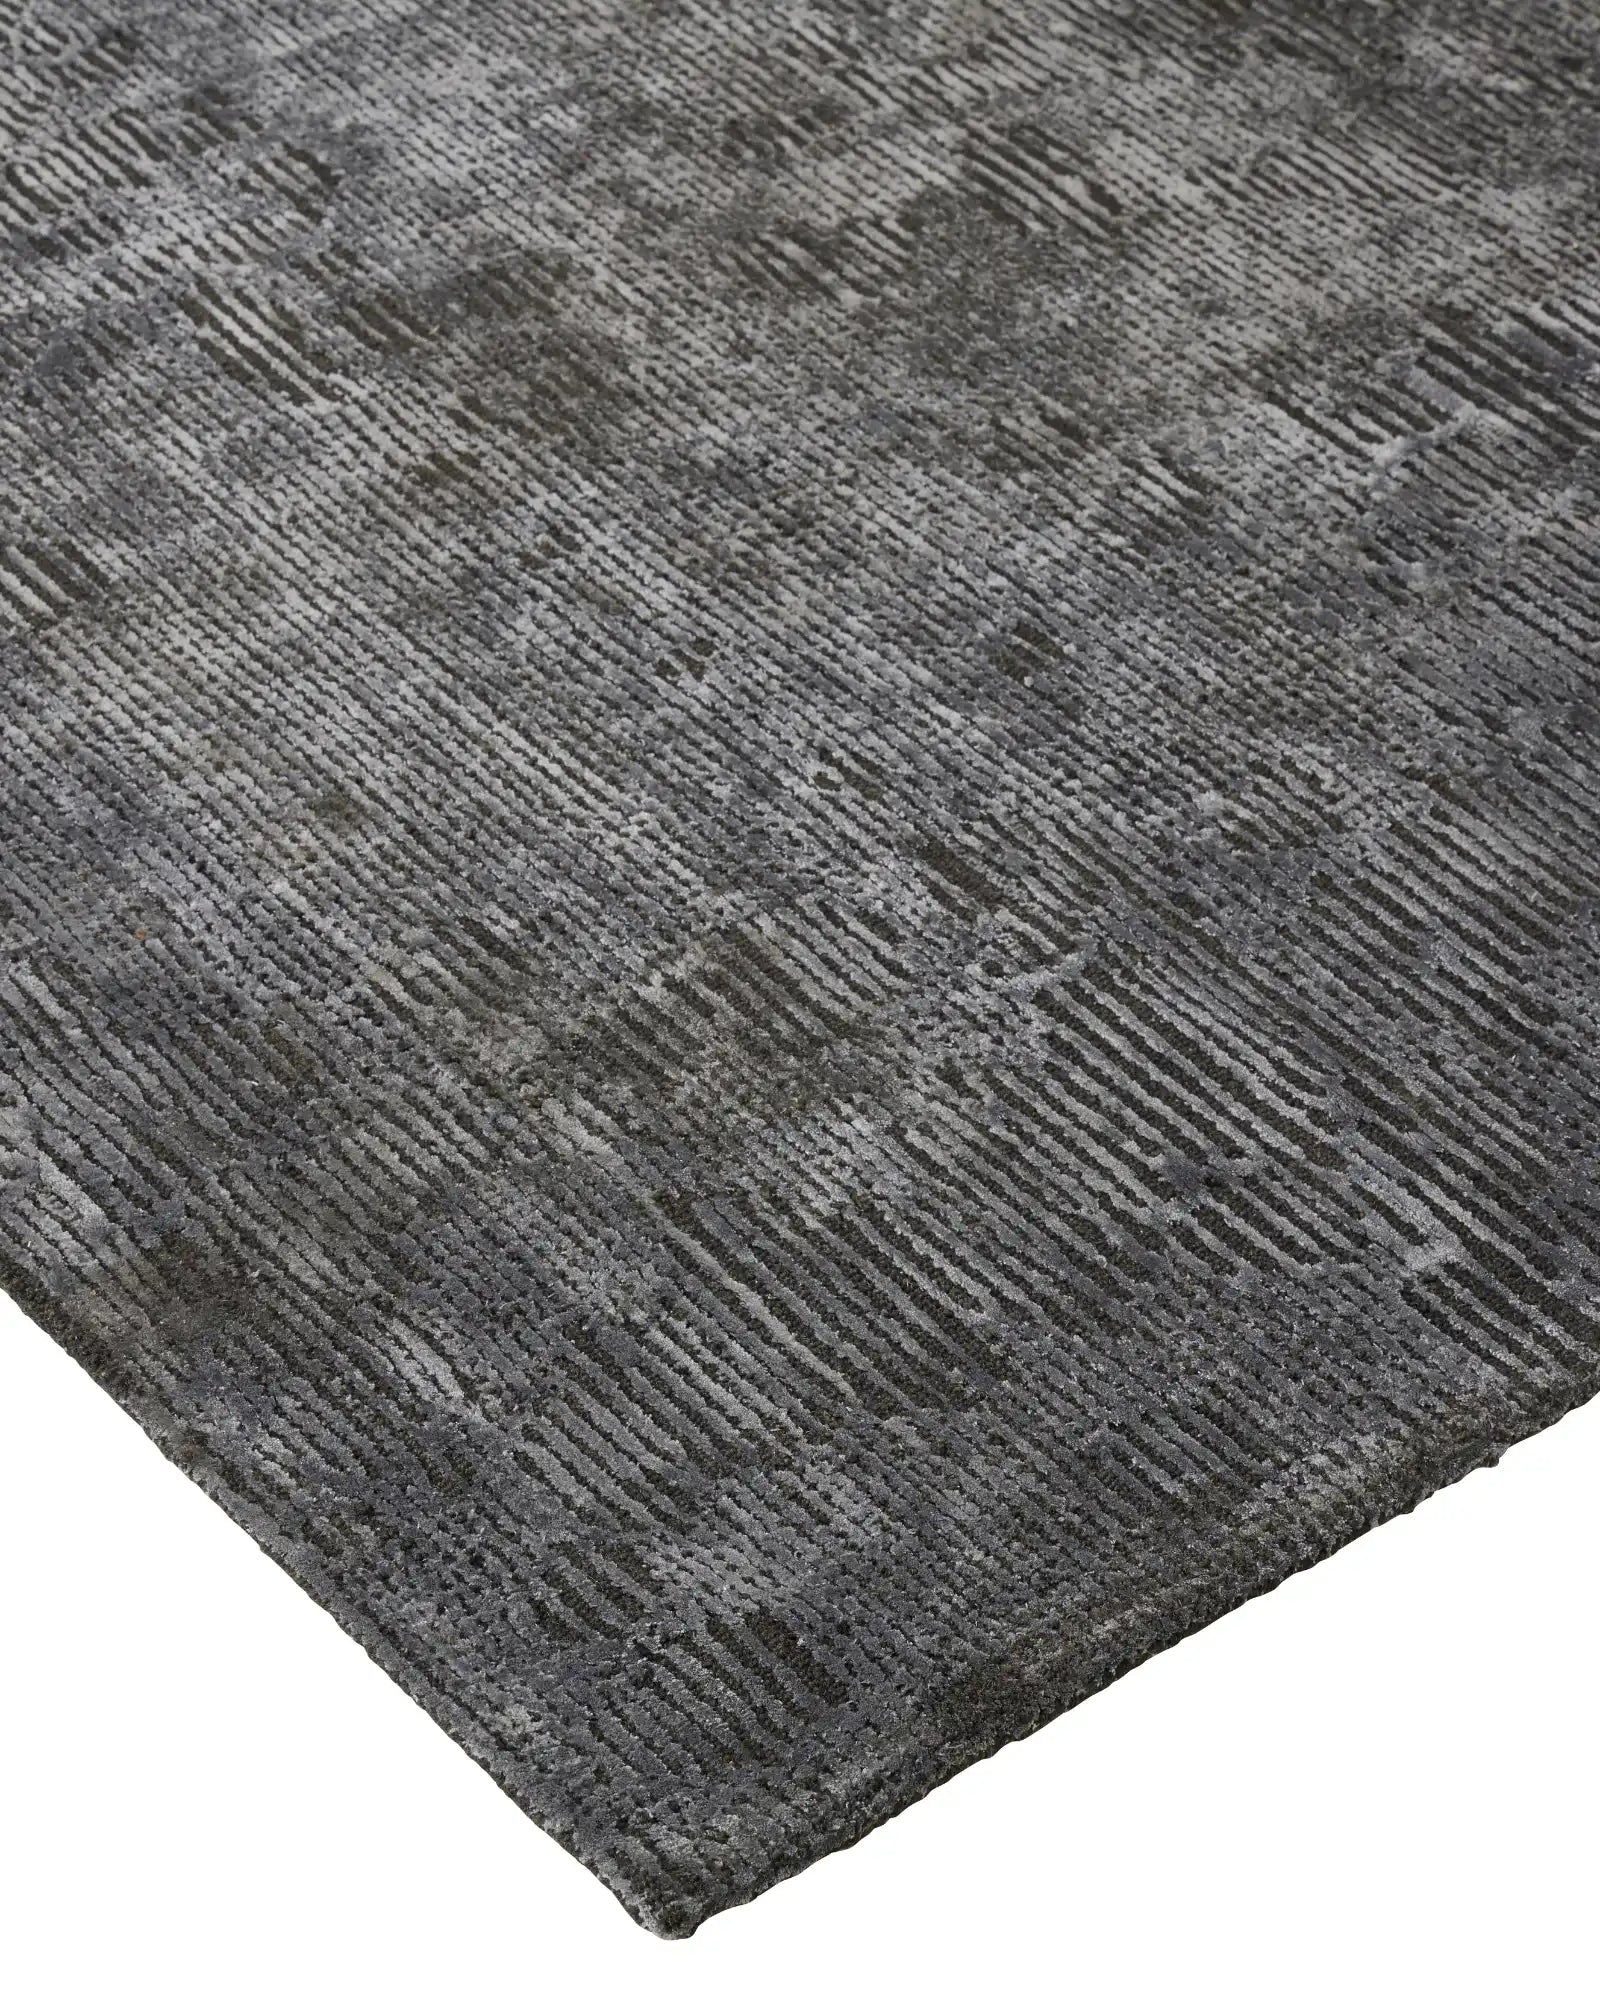 Weave Glebe Floor Rug -  Shadow RGB02SHAD